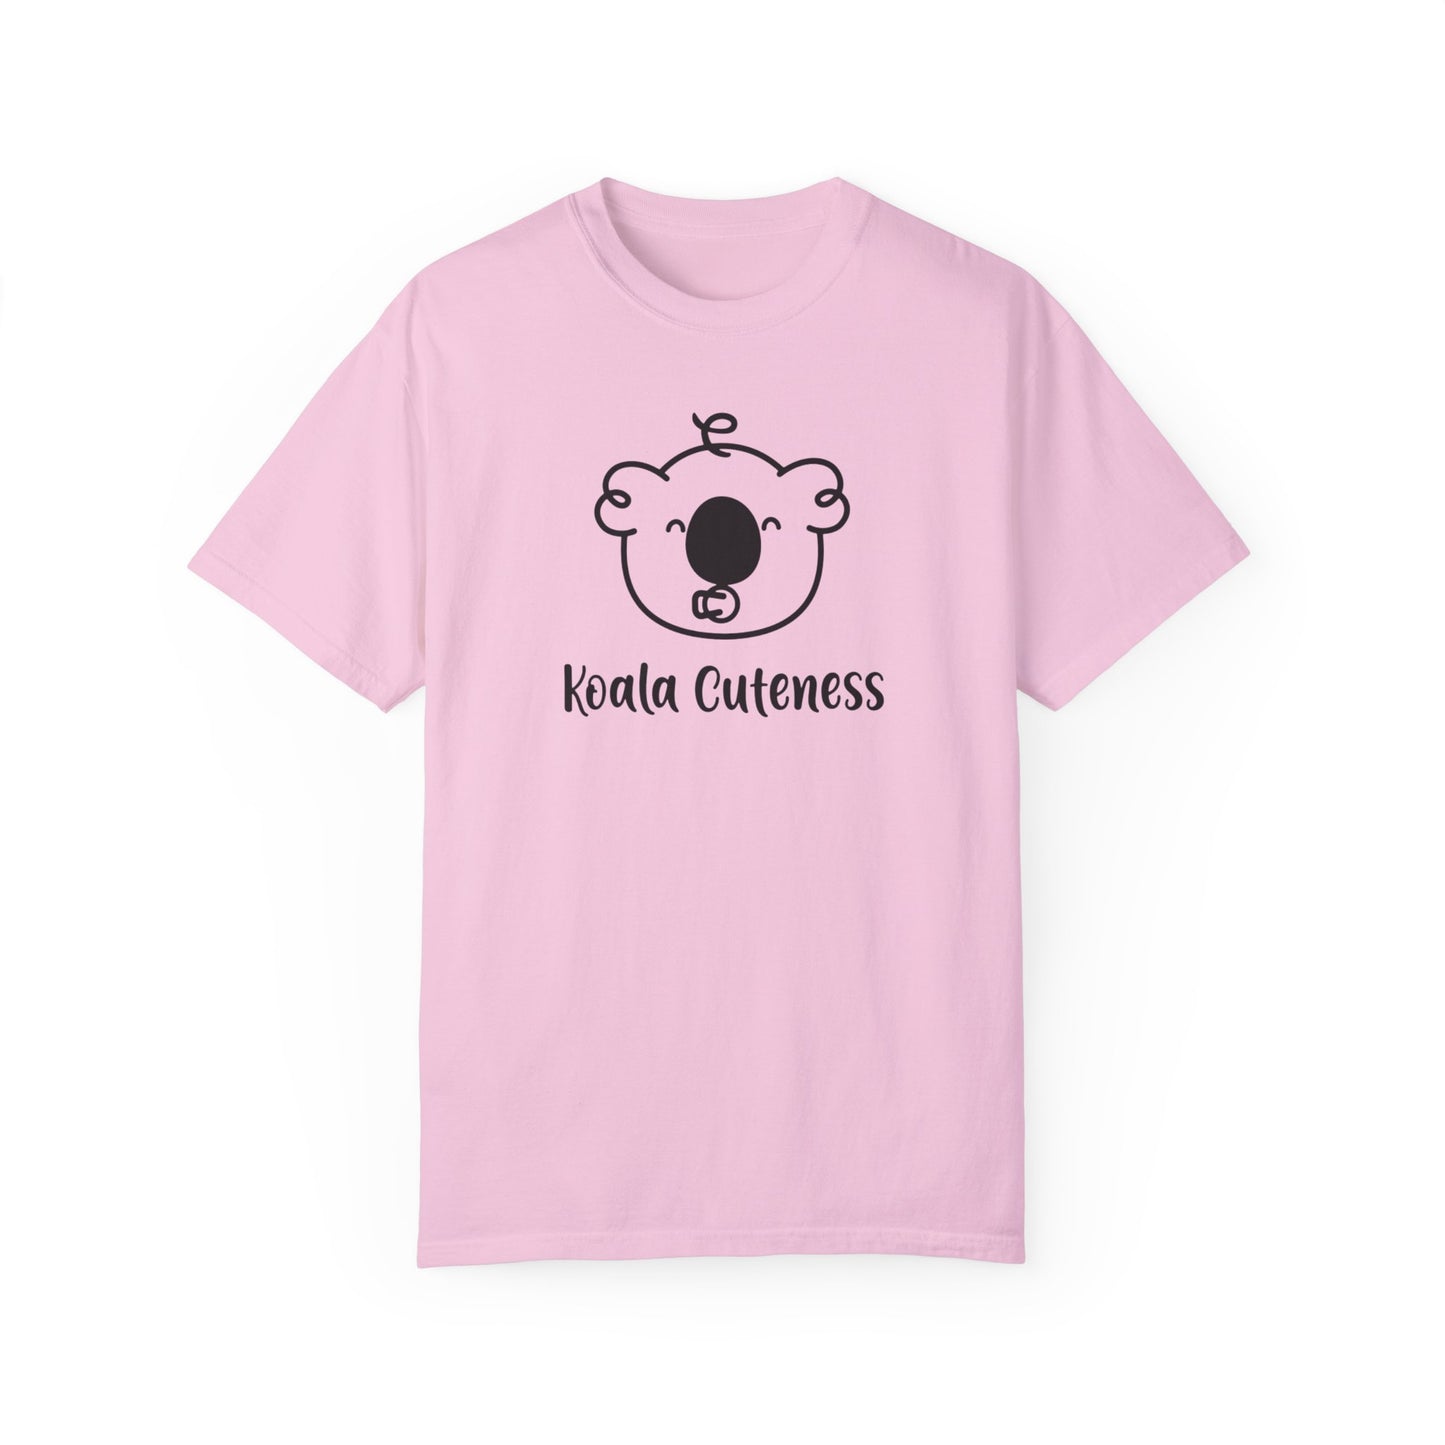 Baby Li's Koala Cuteness T-shirt - Bright Colors